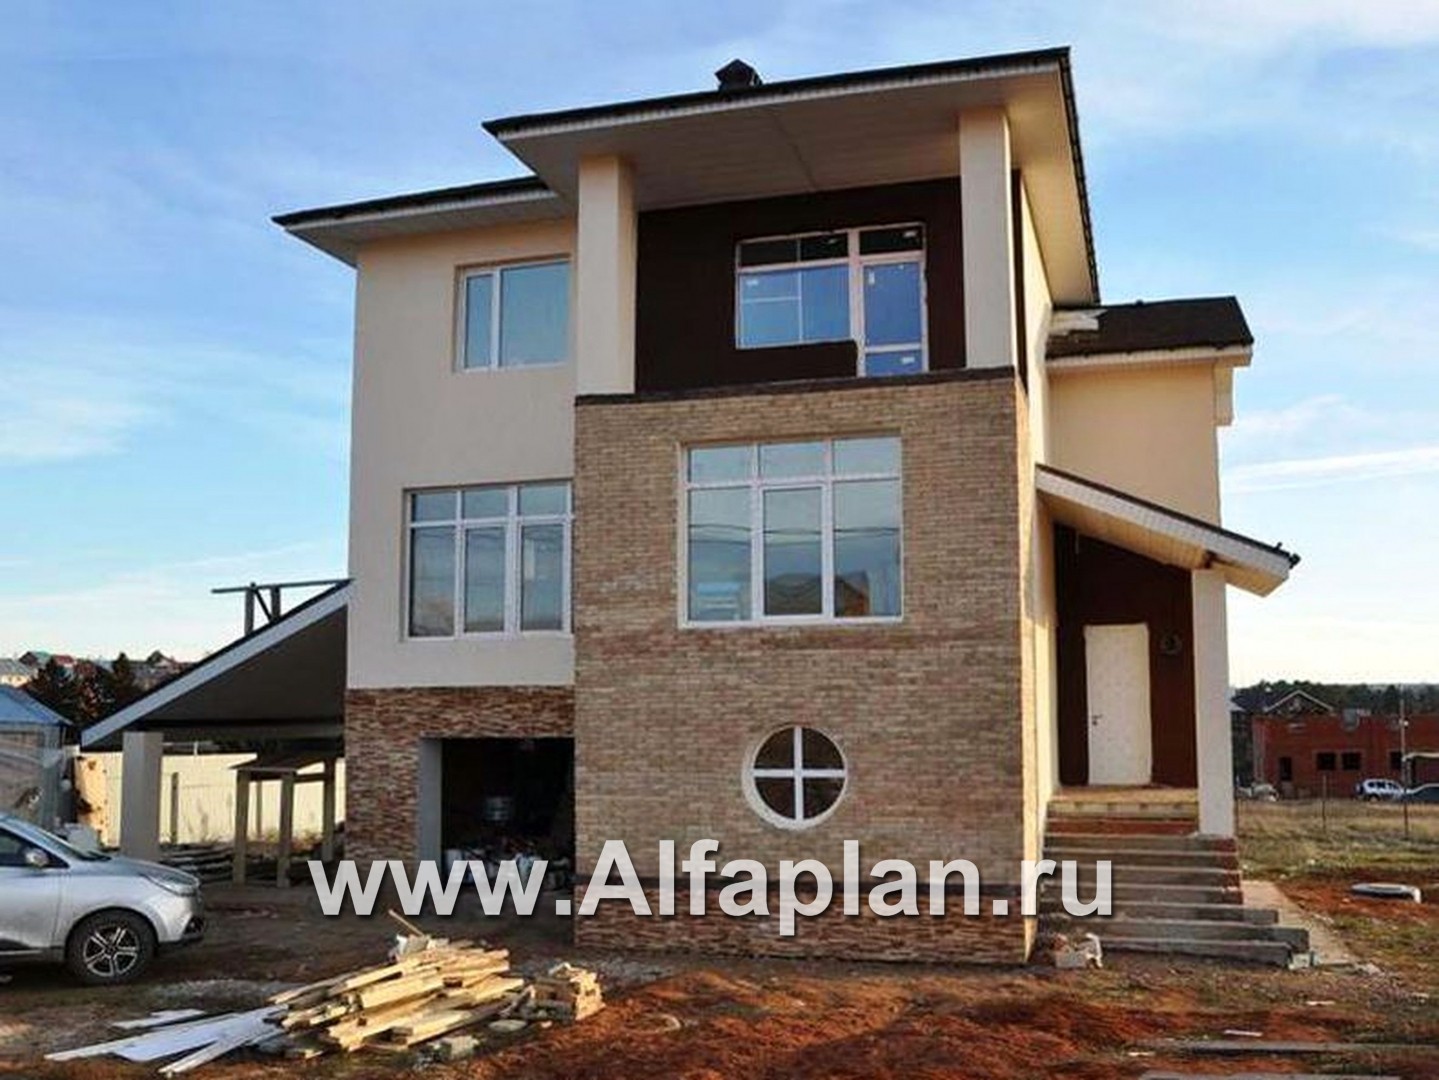 Проекты домов Альфаплан - «Аура» - комфортный дом в современном стиле - дополнительное изображение №1